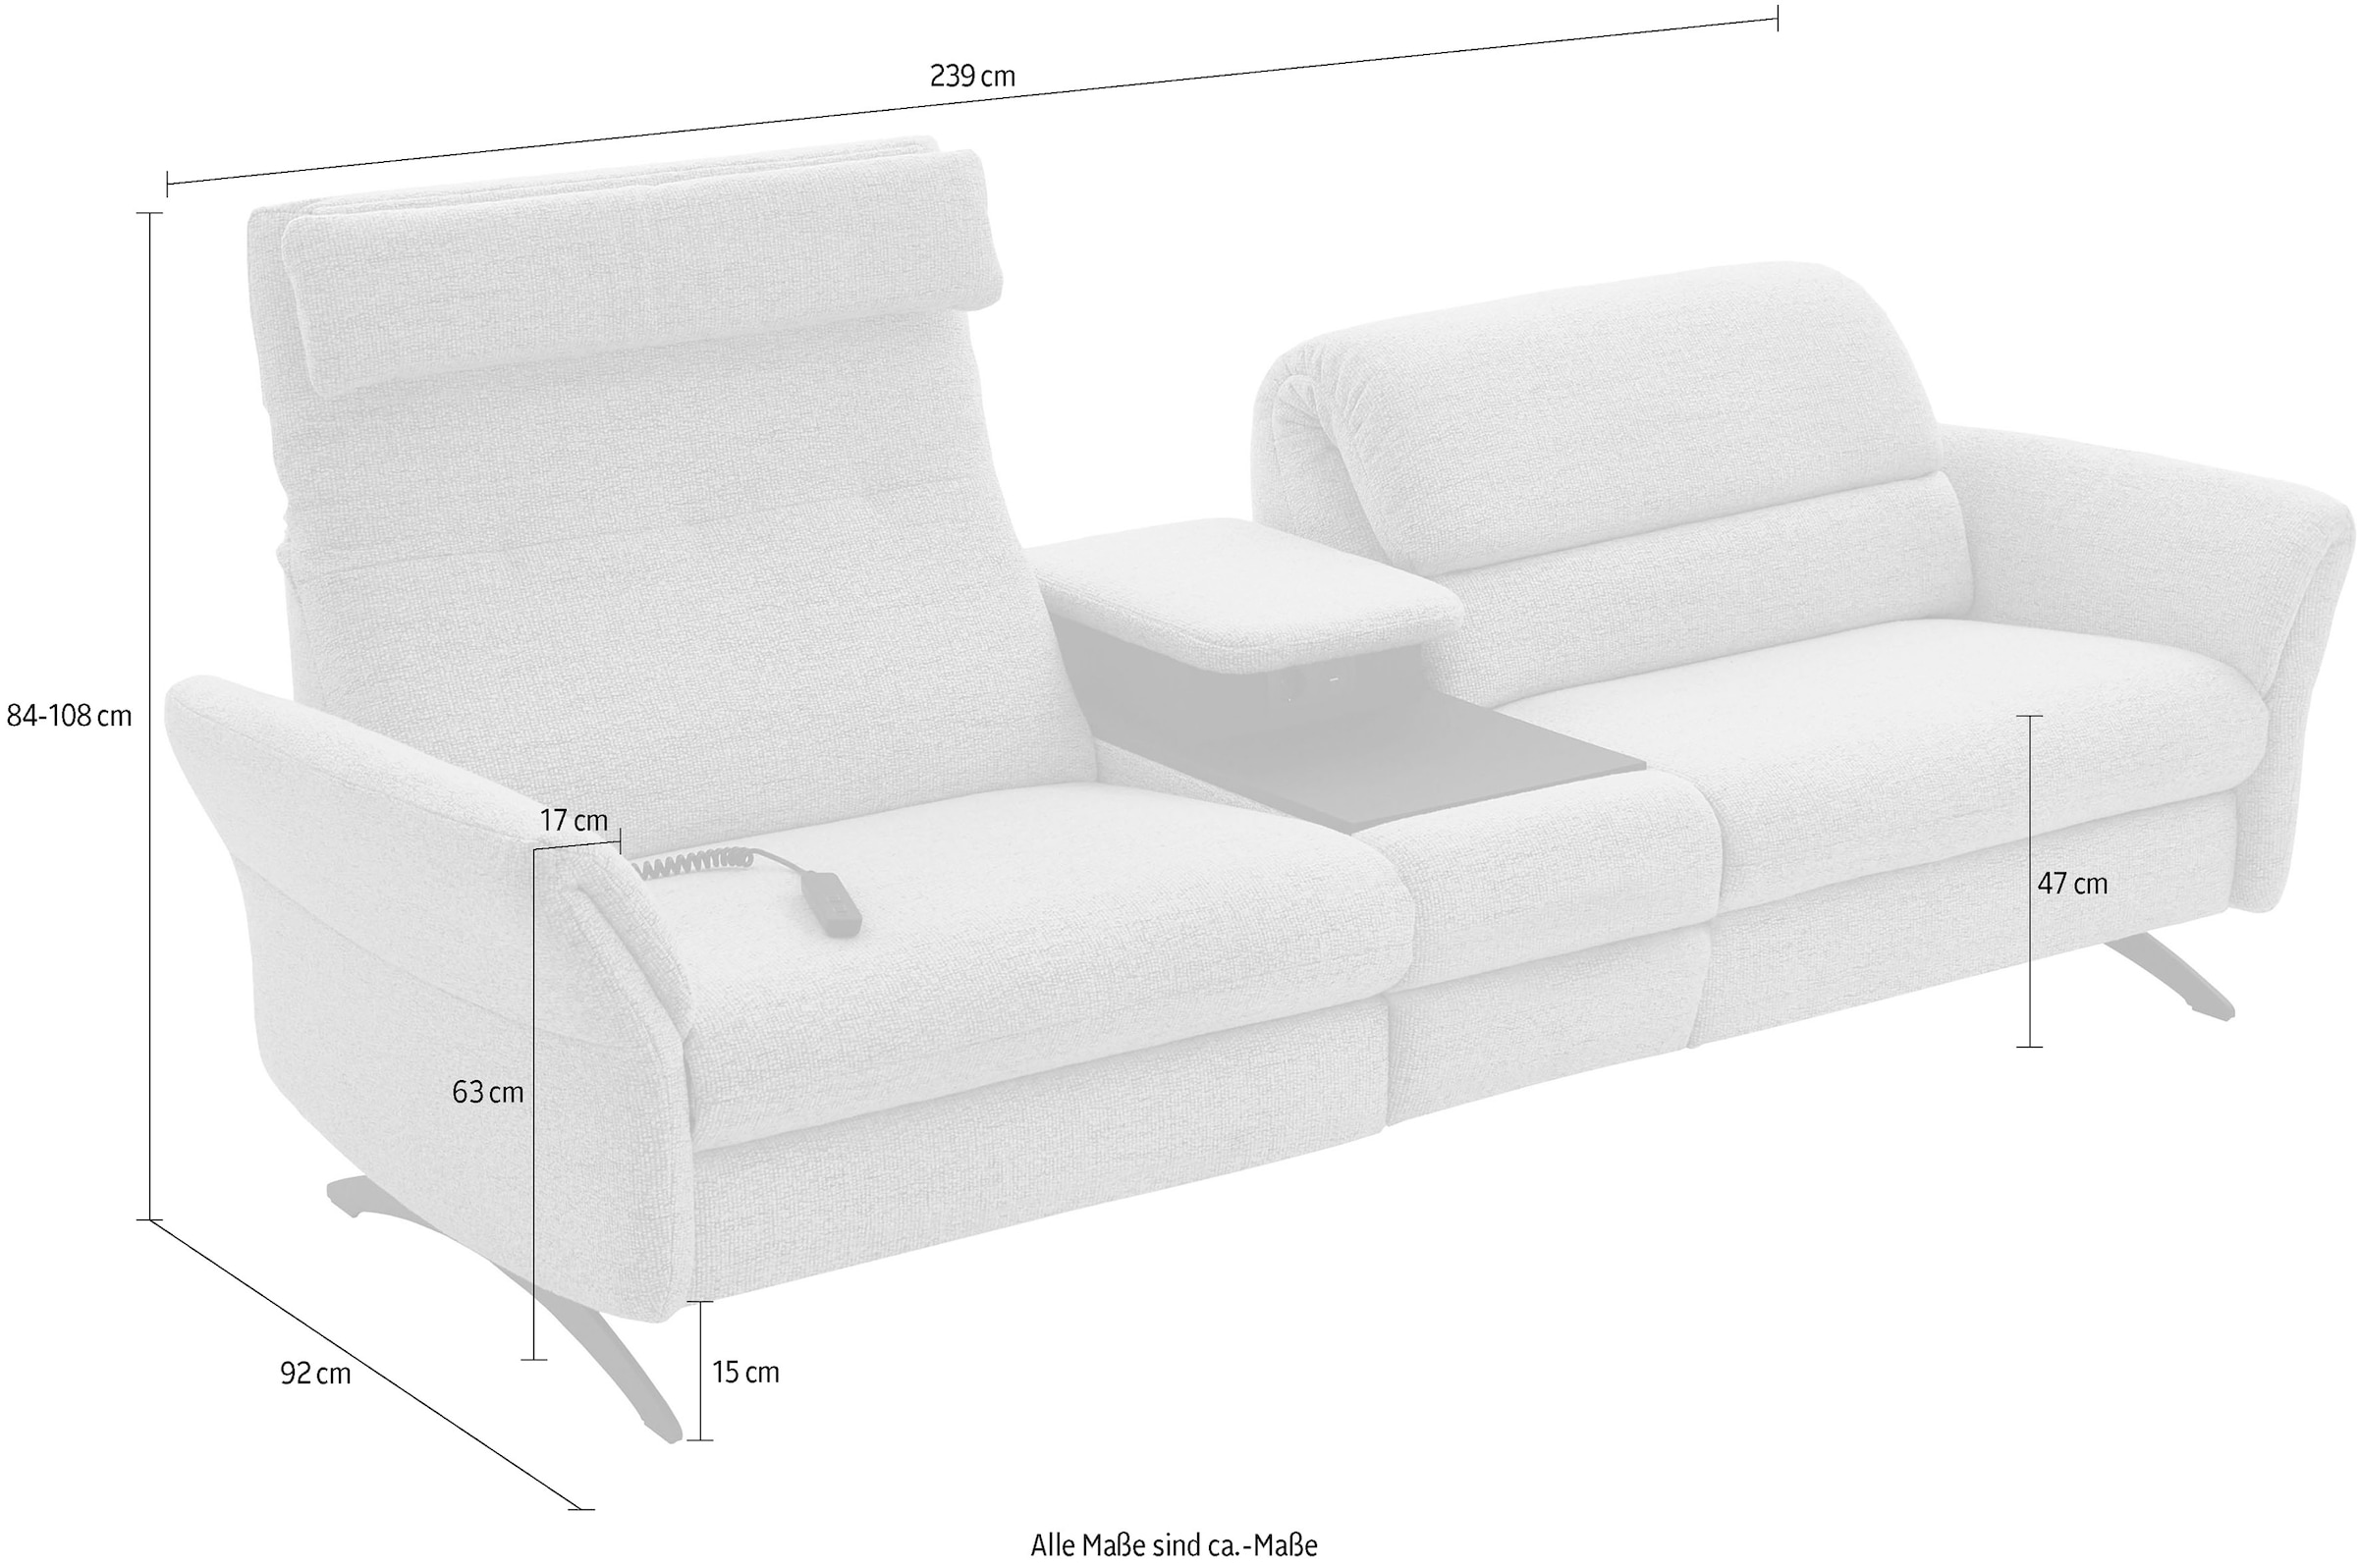 Places of Style 3-Sitzer »Bellaria, inklusive 2x Relaxfunktion motorisch mit Herz-Waage-Beschlag«, Zwischenelement mit Tisch, Steckdose & USB-Ladestation